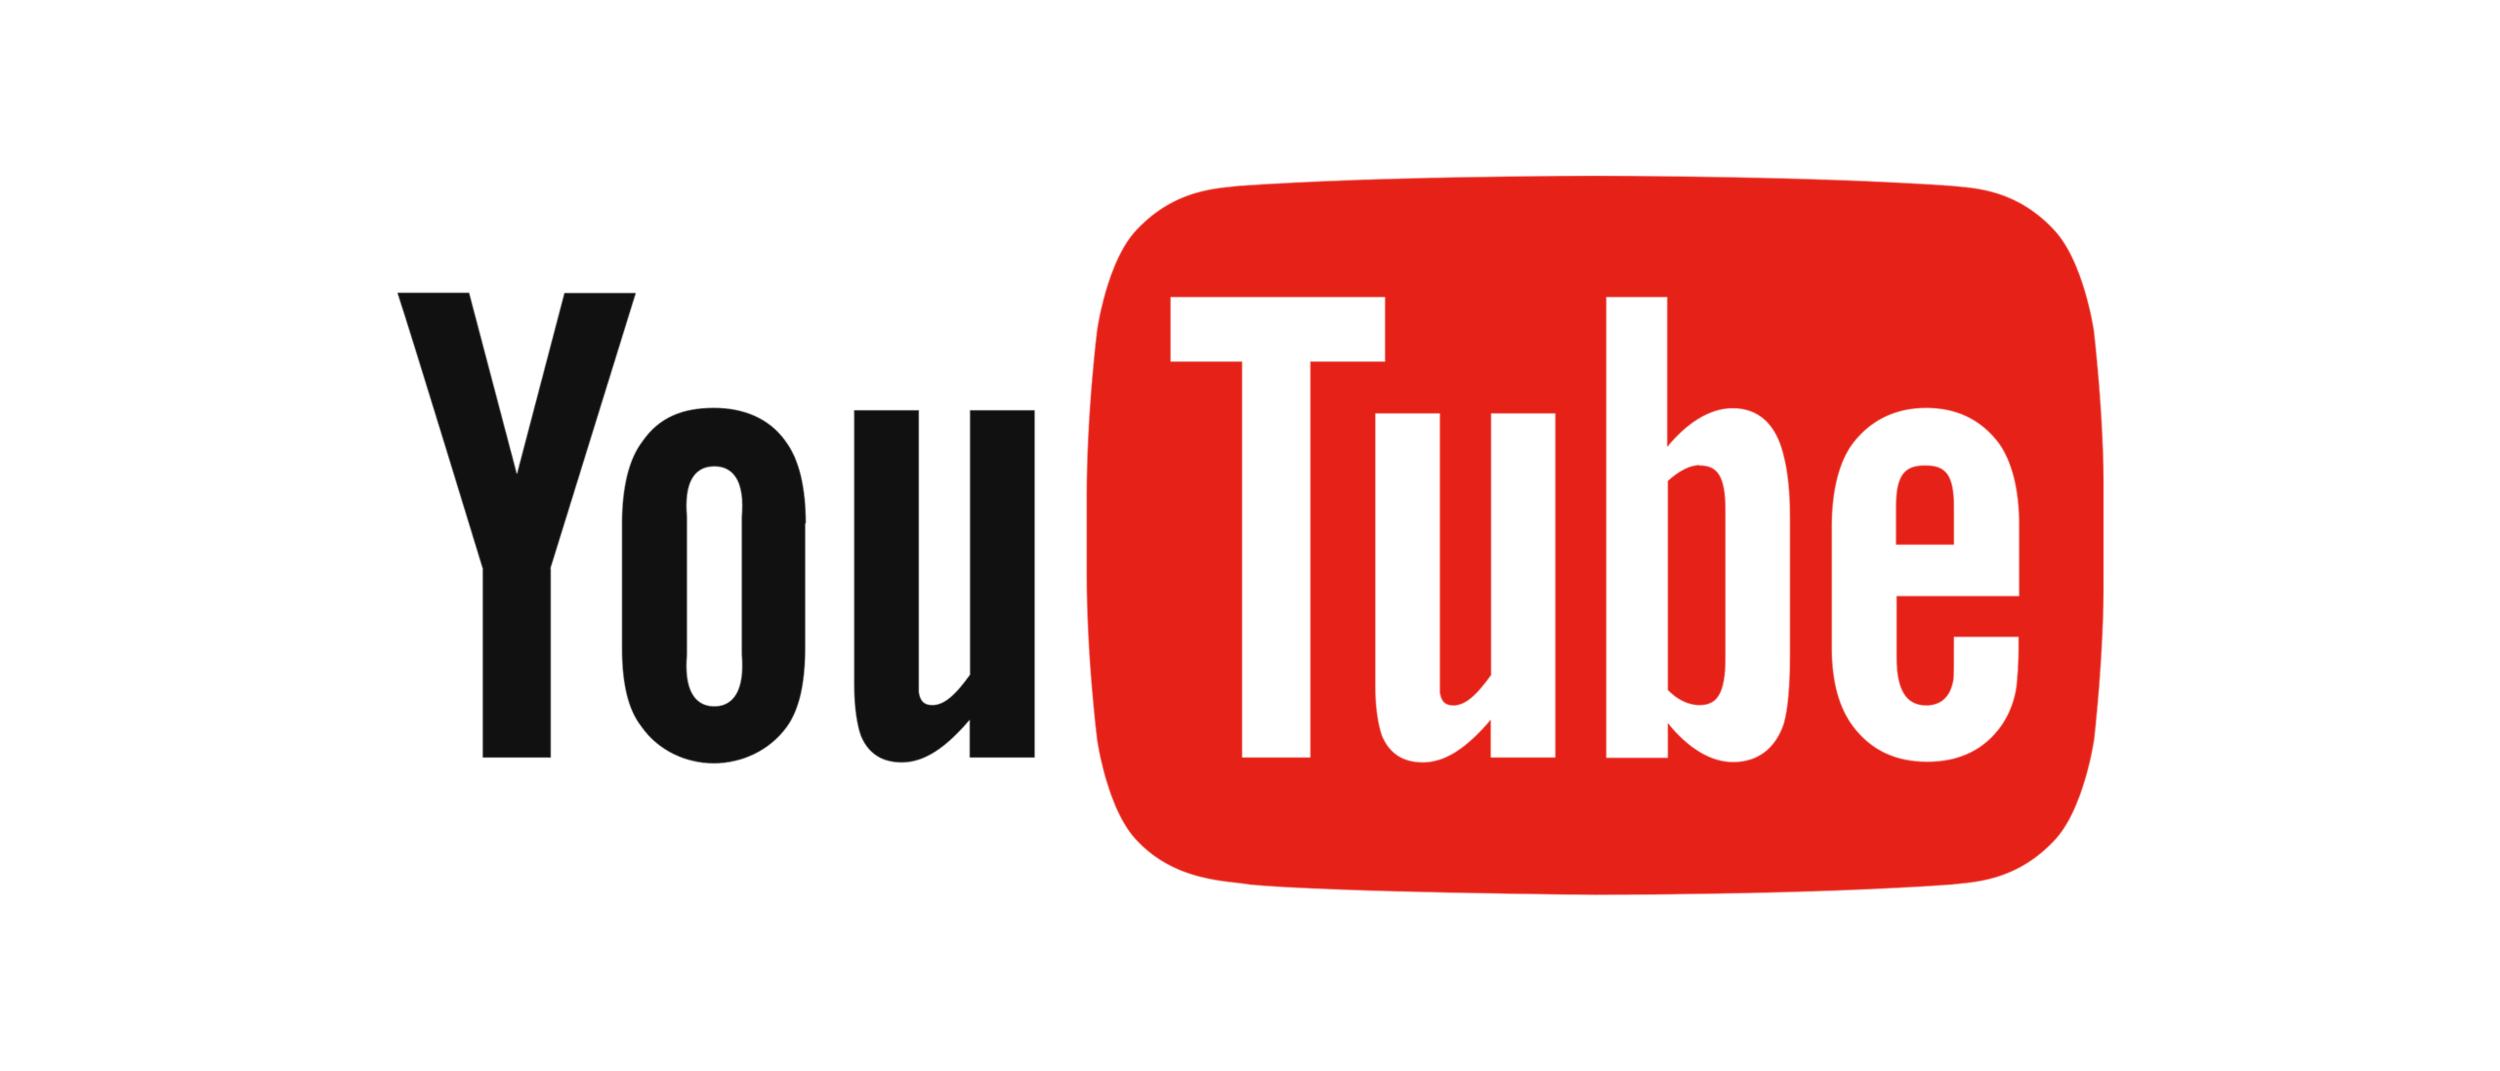 Музыка по ссылке ютуб. Картинка для музыки на ютуб. Youtube Music. Логотип youtube канала Music. Music логотип для ютуба.